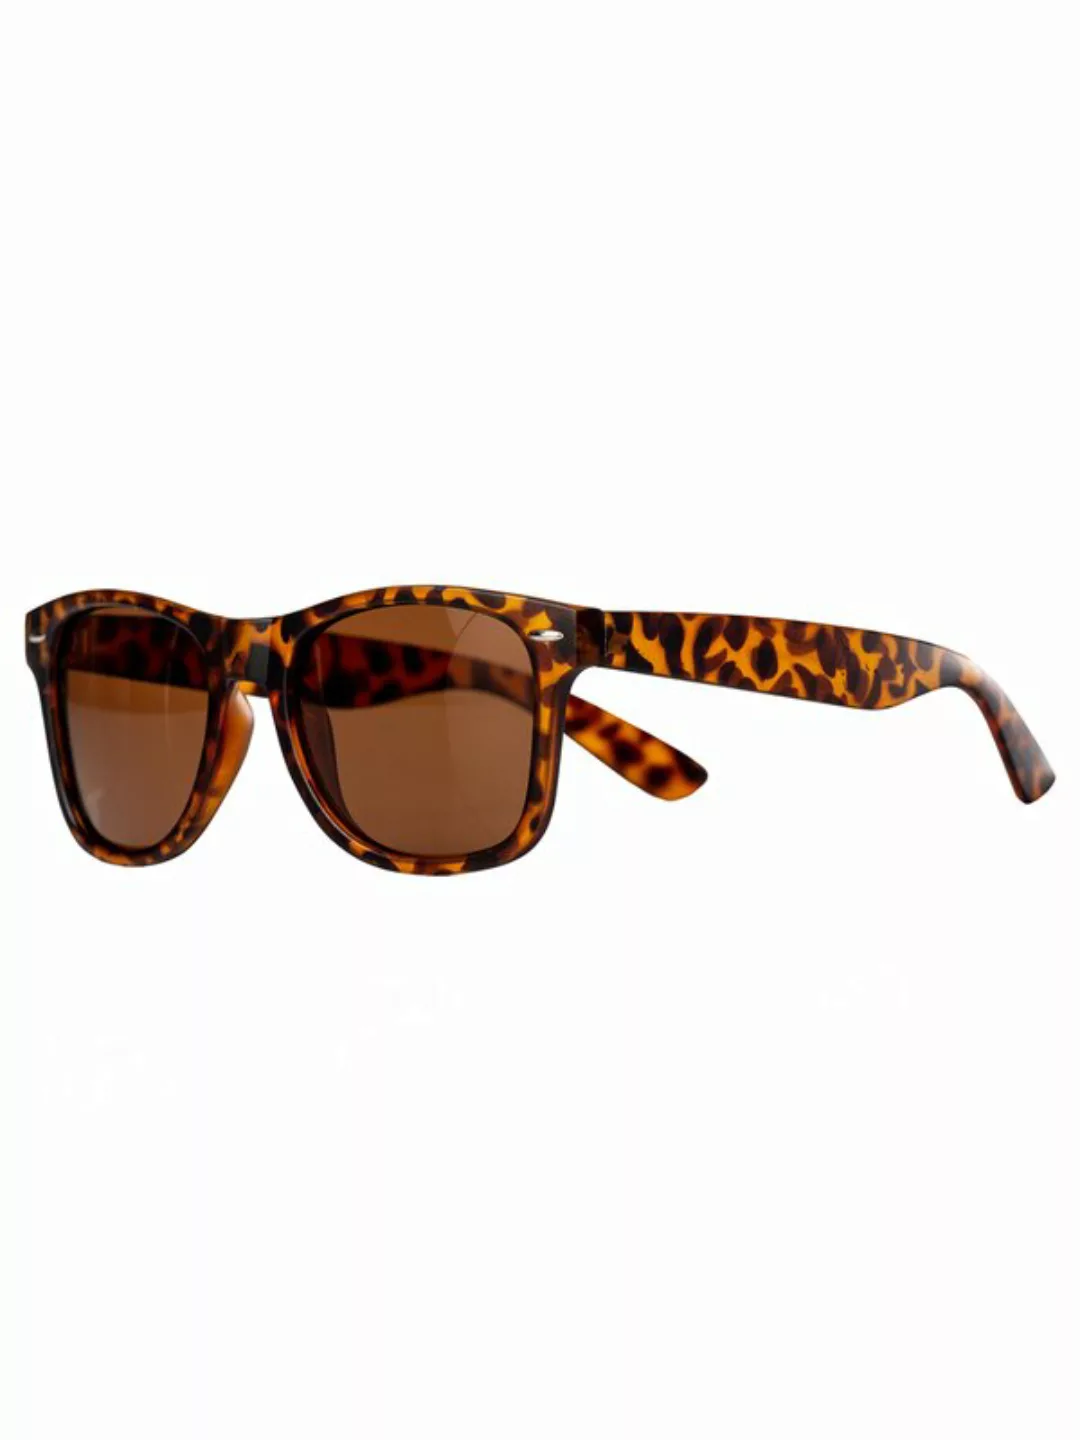 Sonnenbrille Hema im Leoparden-Look günstig online kaufen